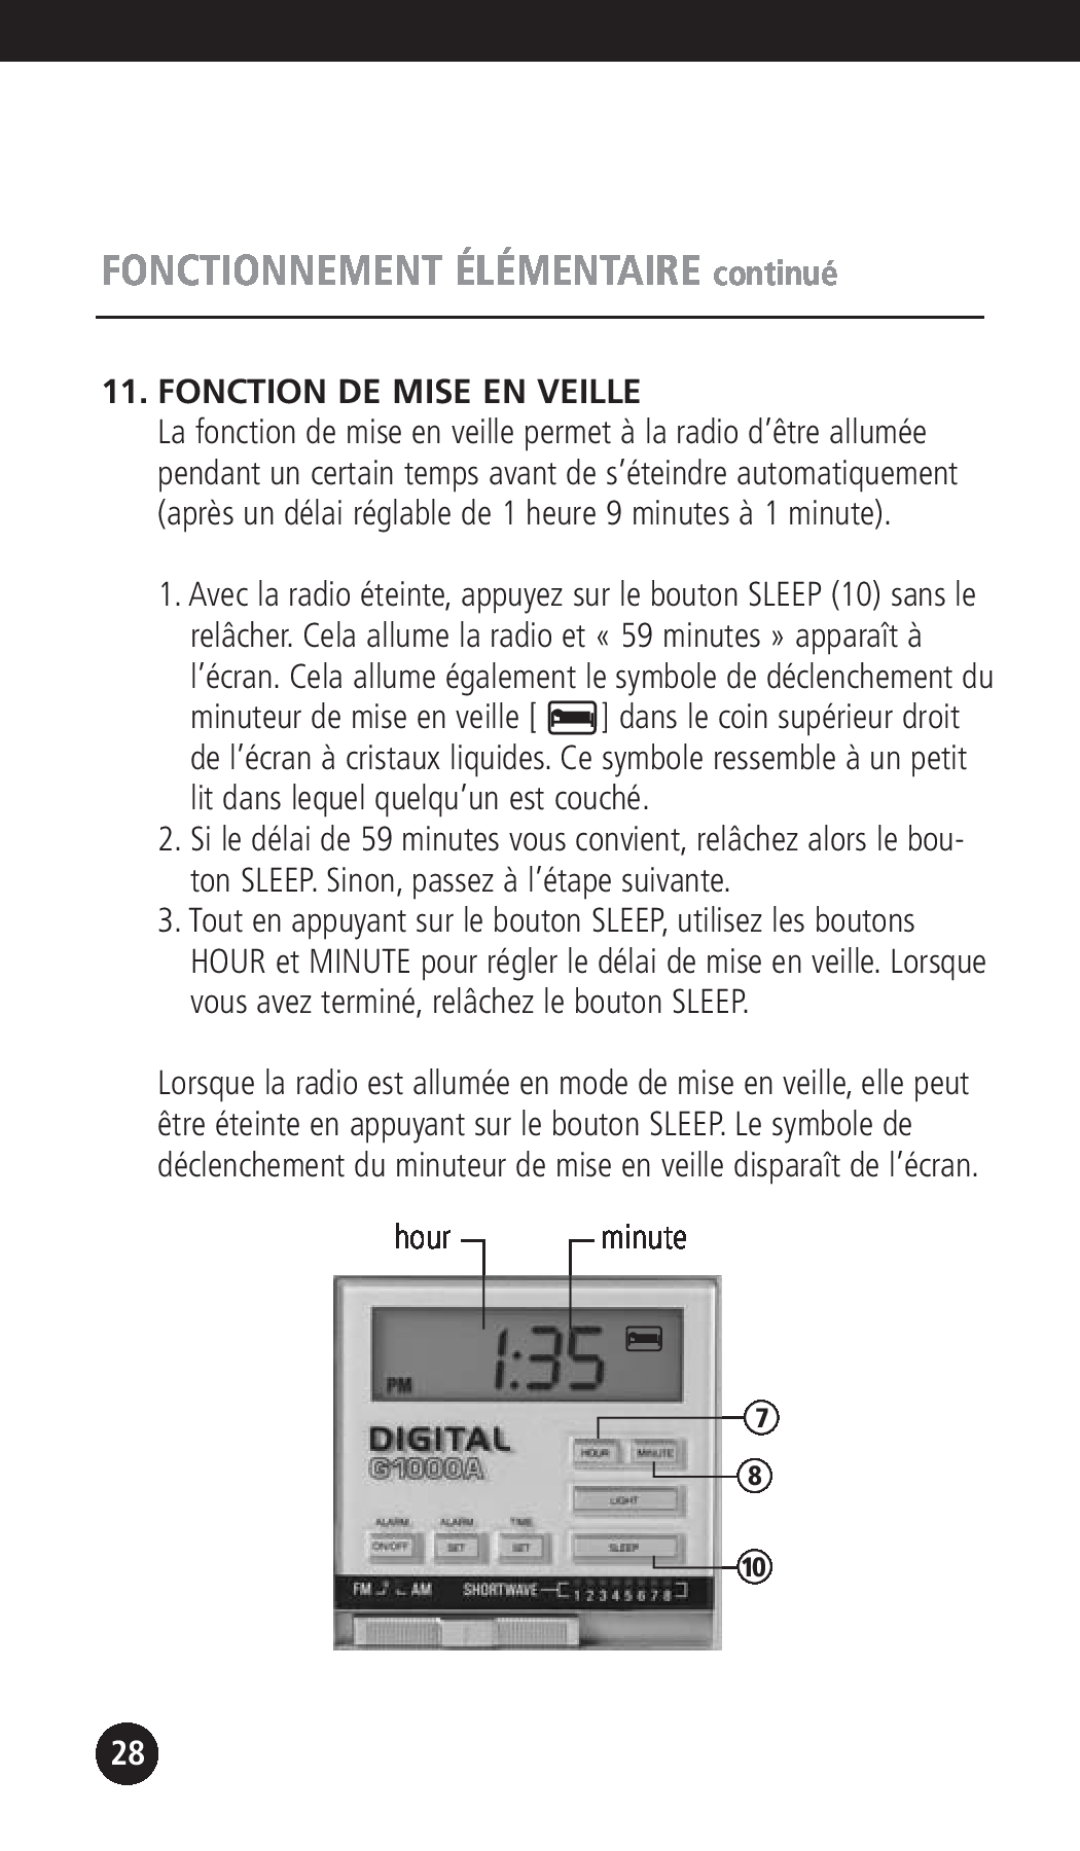 Eton G1000A operation manual Fonction De Mise En Veille, FONCTIONNEMENT ÉLÉMENTAIRE continué, hour, minute 